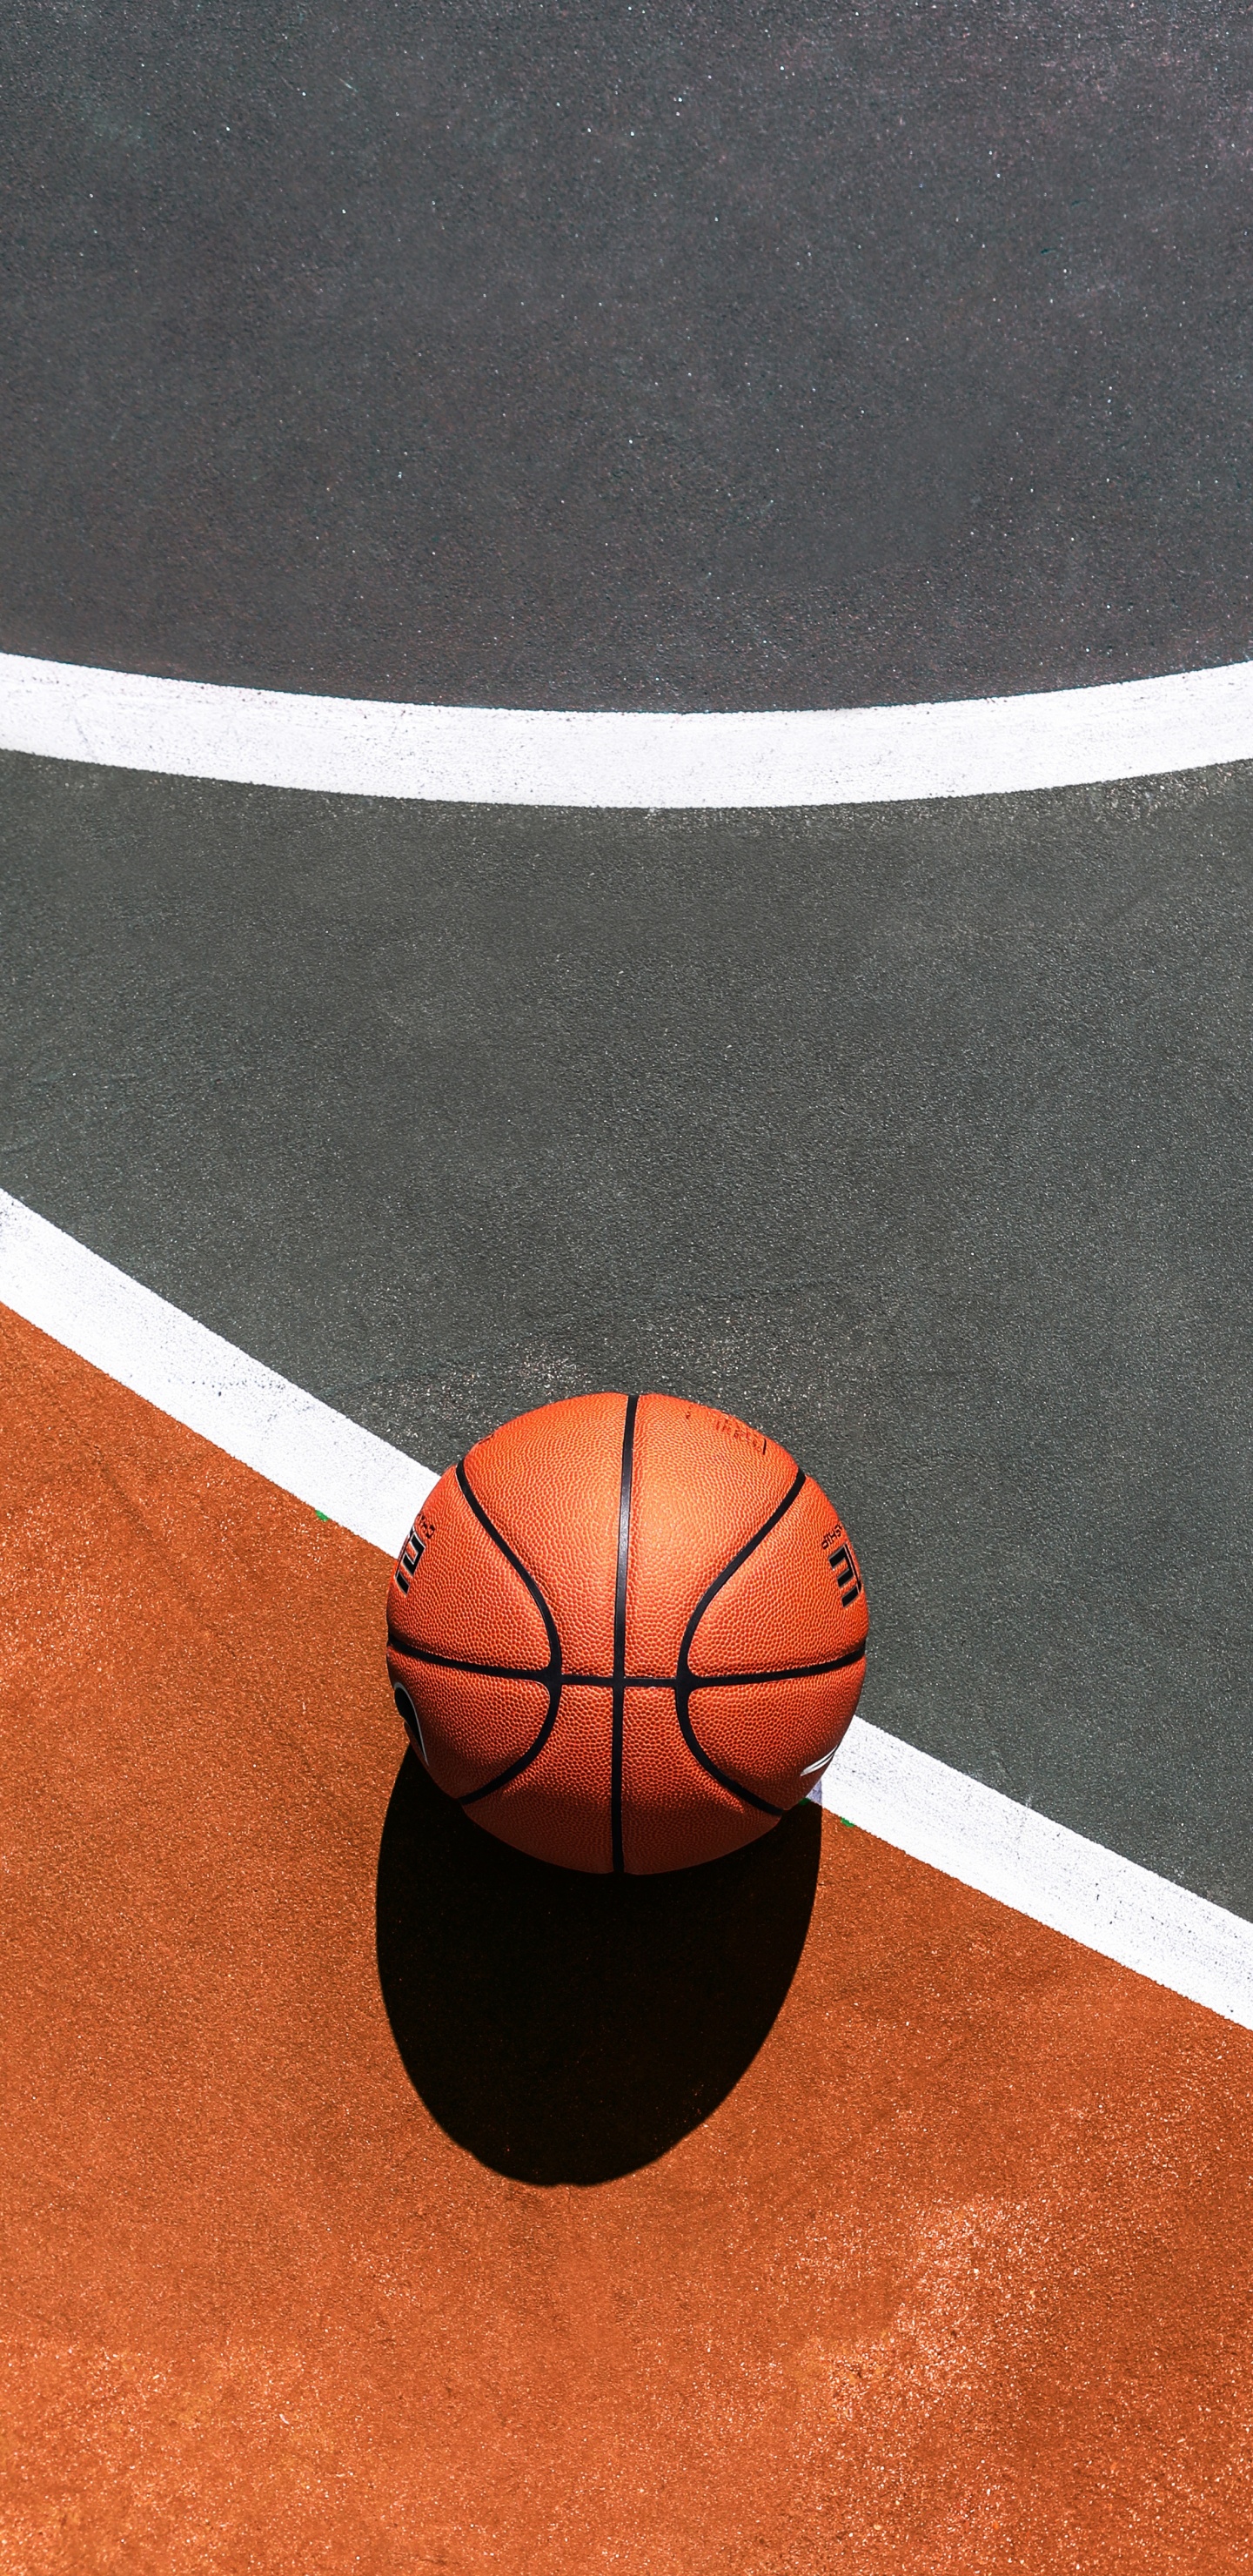 Обои Баскетбол, баскетбольная площадка, спортивные объекты, мяч, командный вид спорта в разрешении 1440x2960